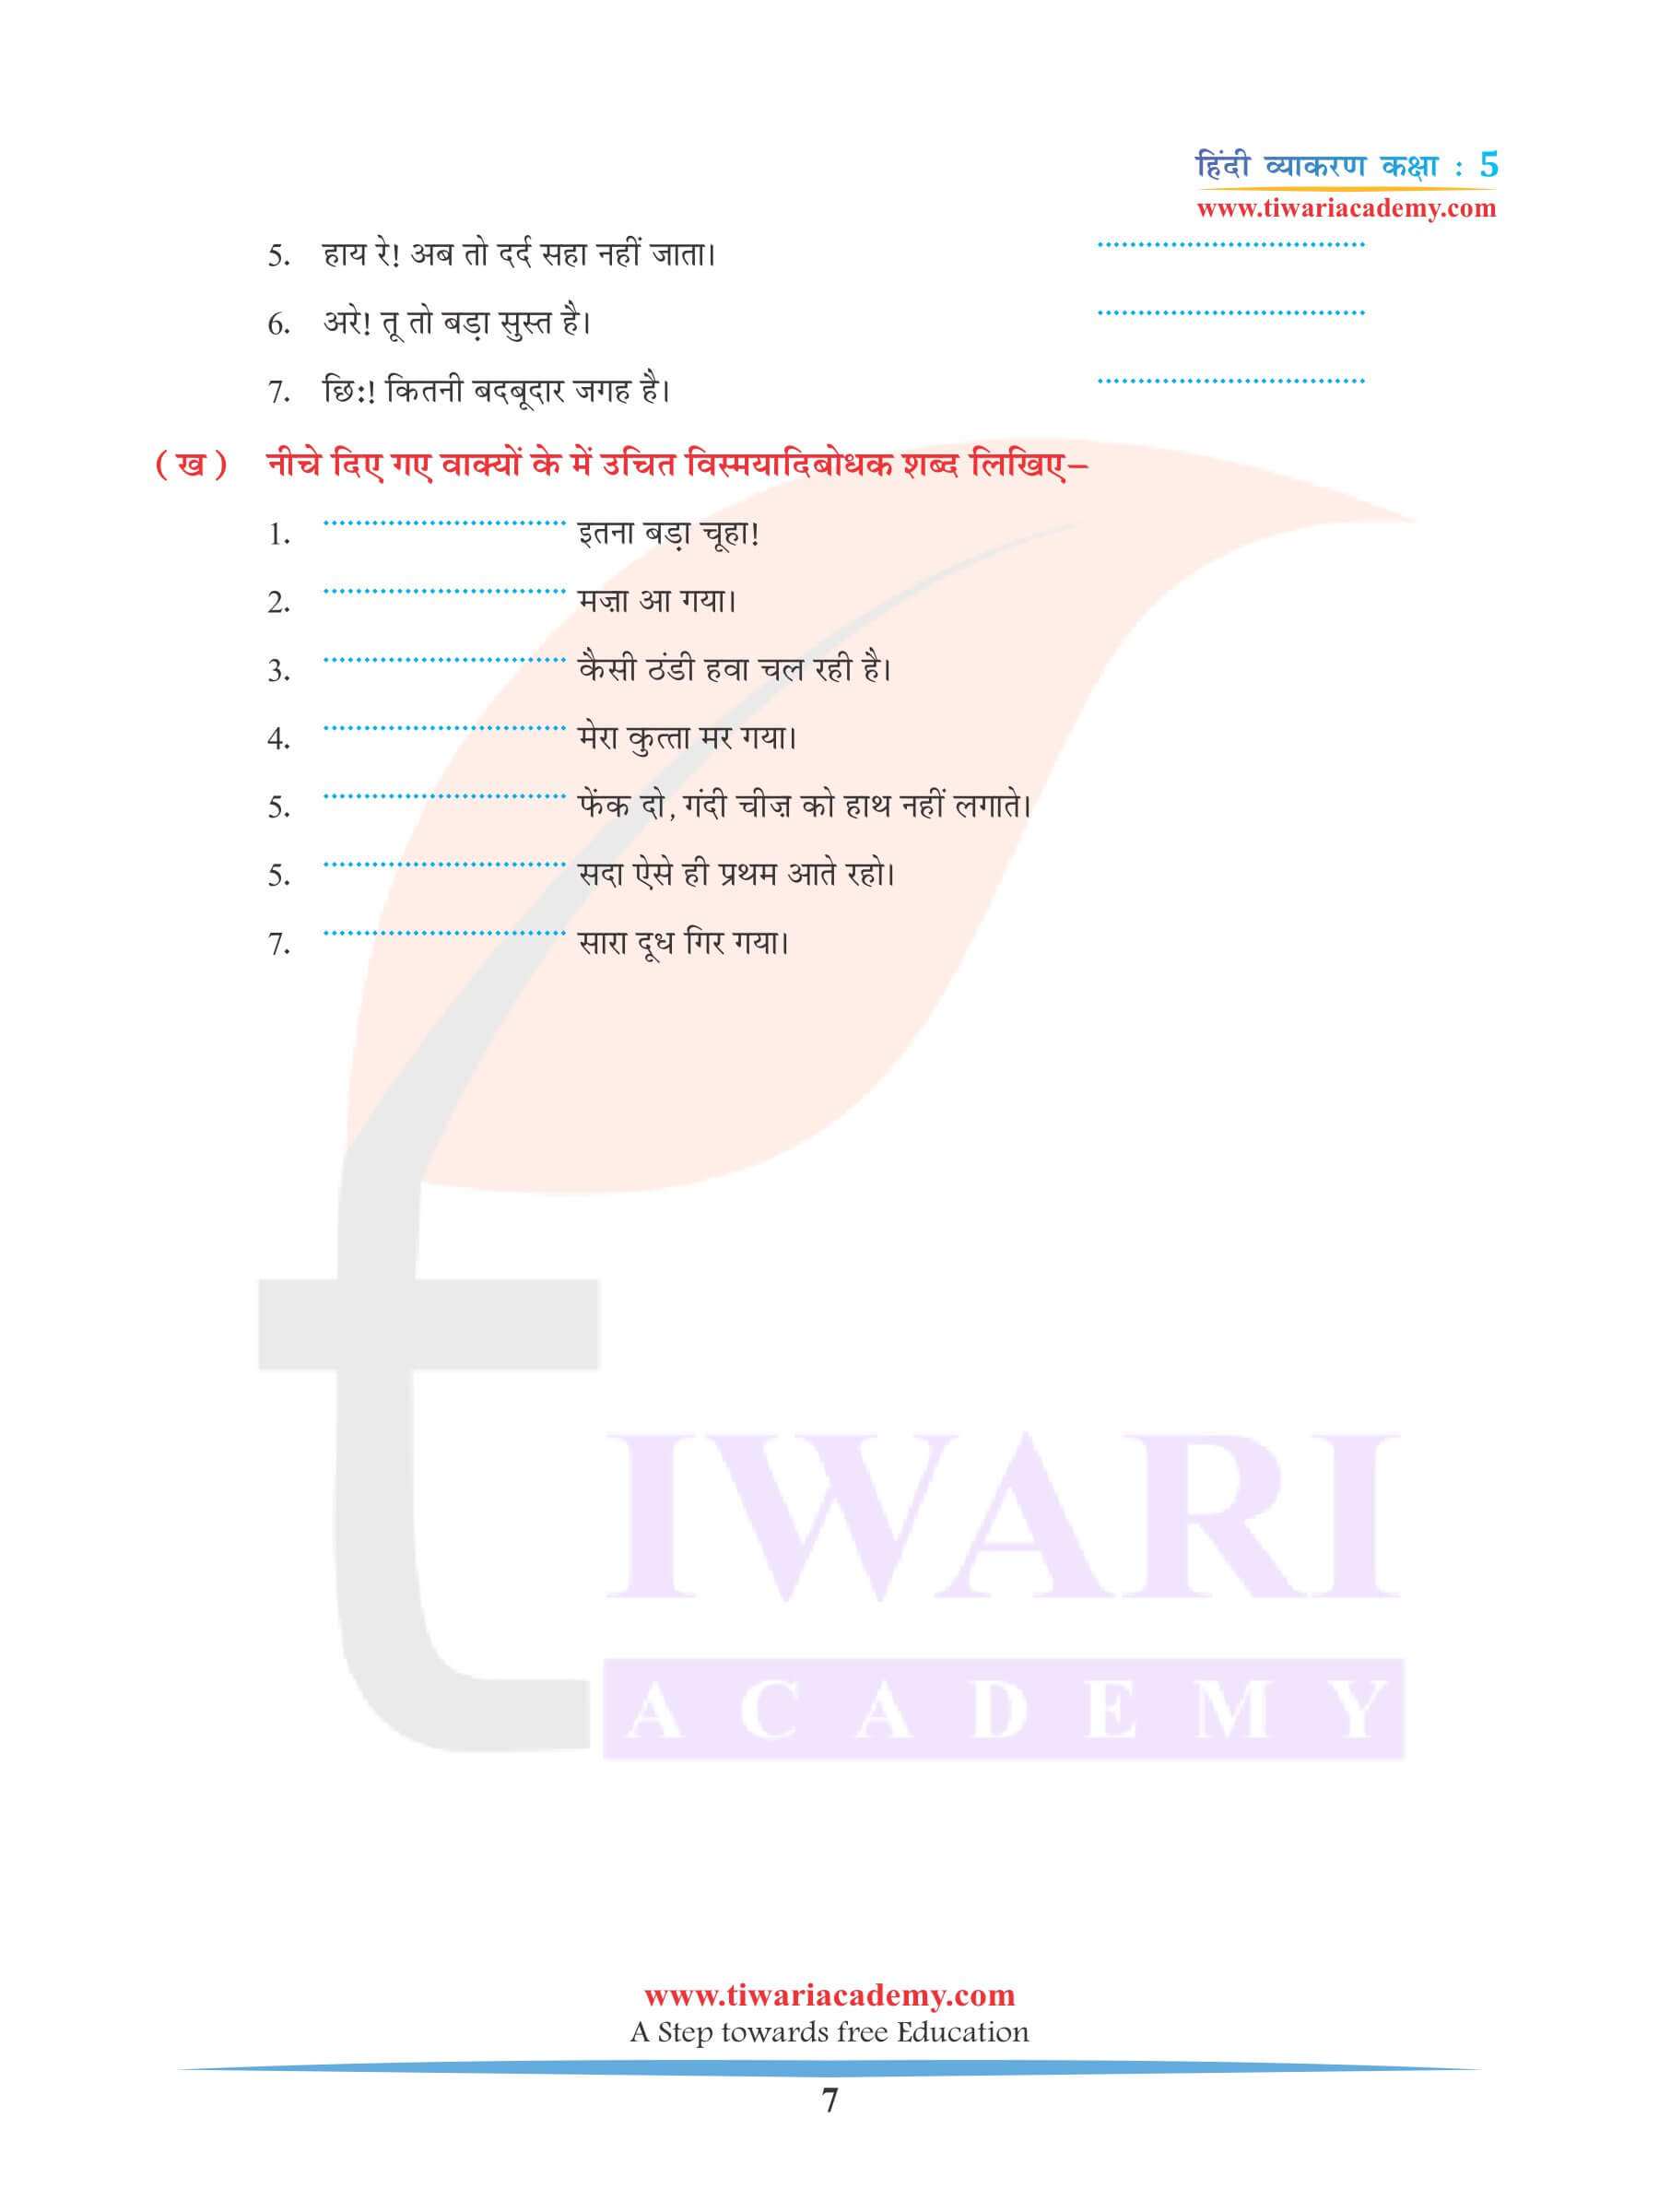 कक्षा 5 हिंदी व्याकरण अध्याय 9 अविकारी शब्द रिक्त स्थान